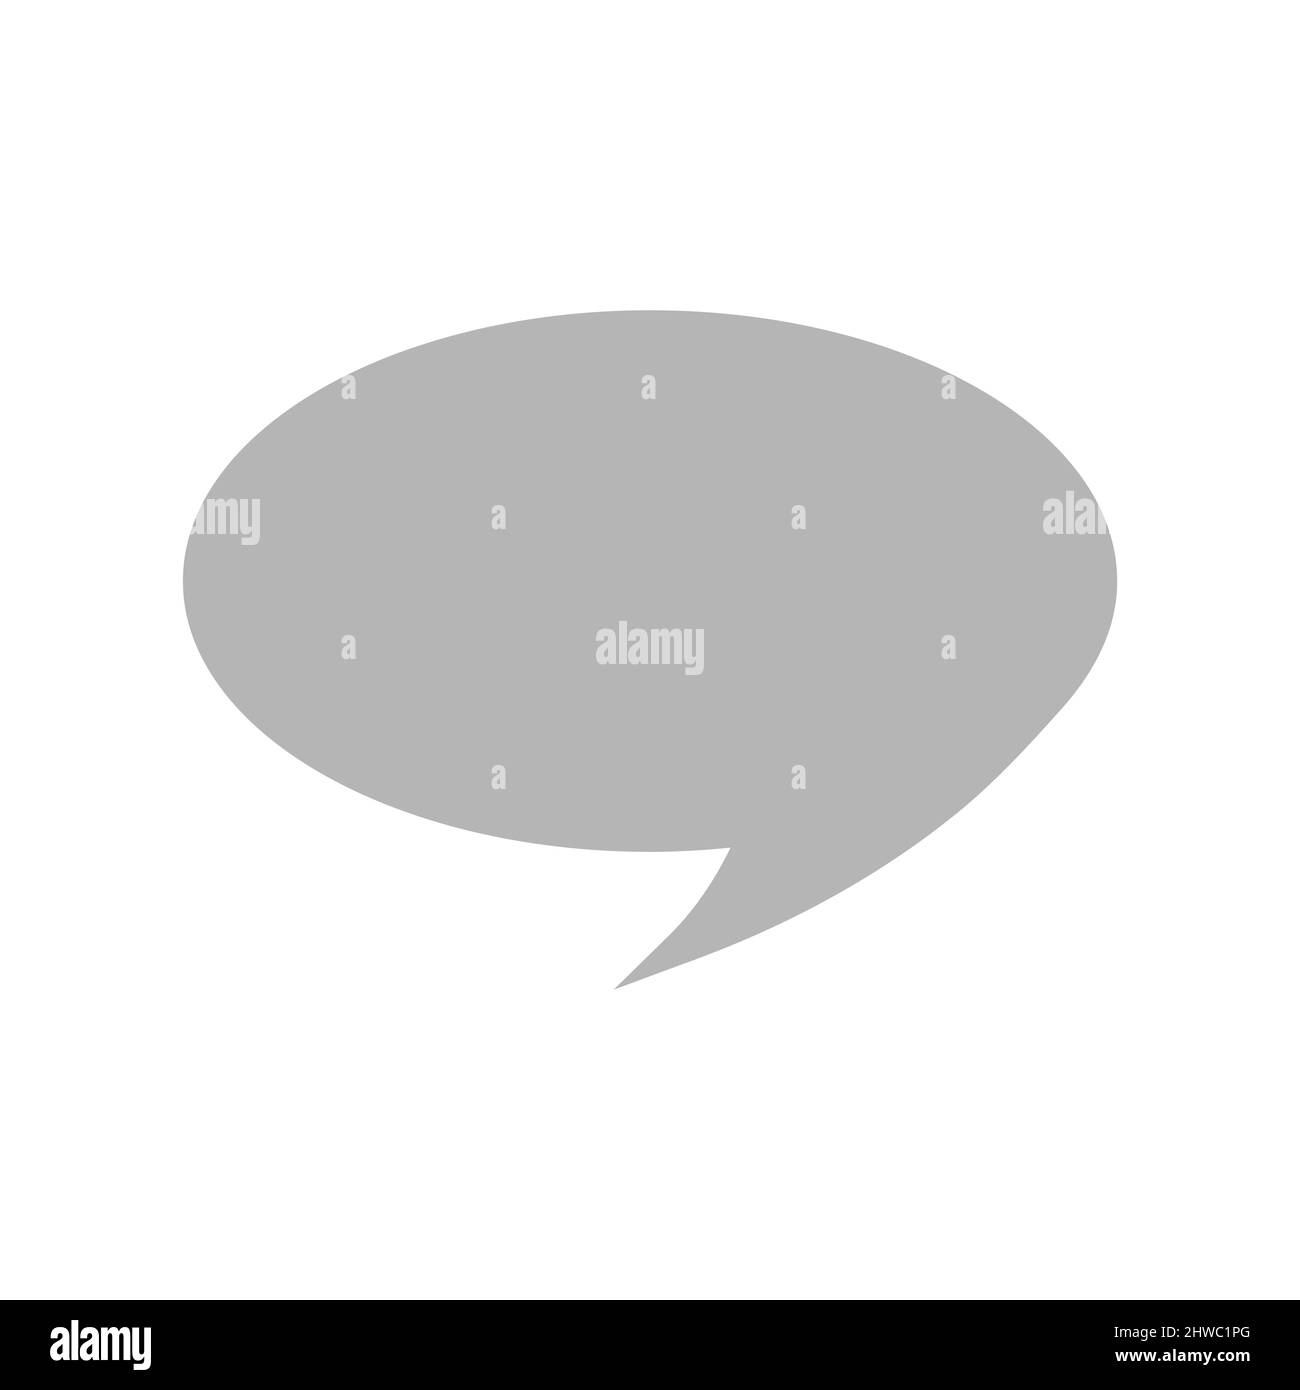 Icona vettoriale con fumetto vocale o chat. Simbolo di fumetto parlante o pensante. Illustrazione Vettoriale